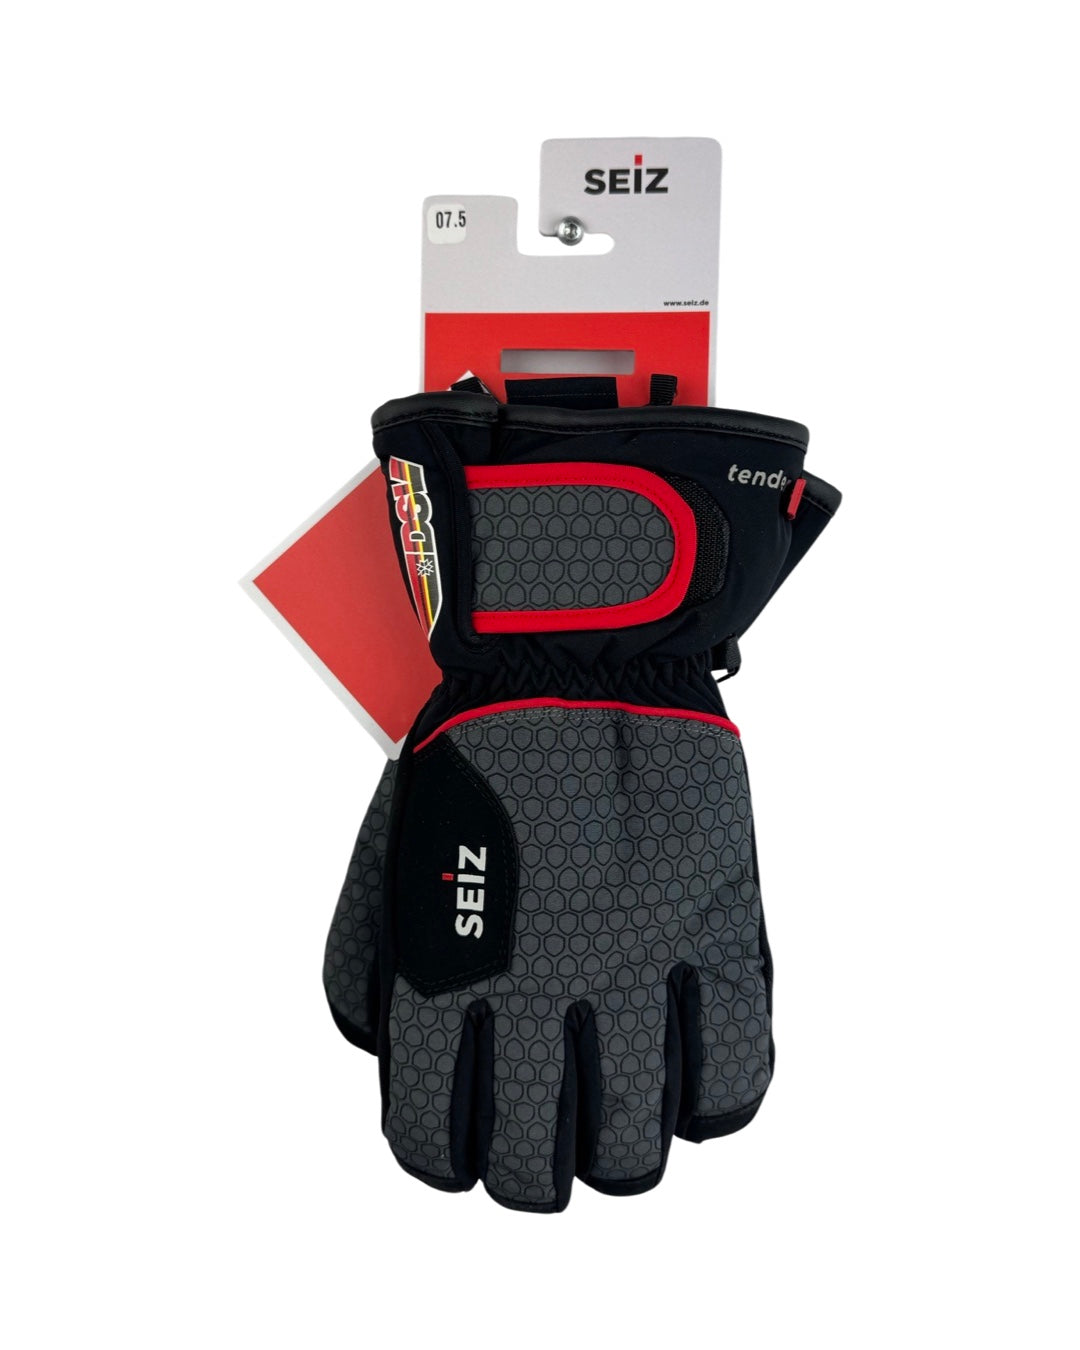 Seiz Ski Gloves 